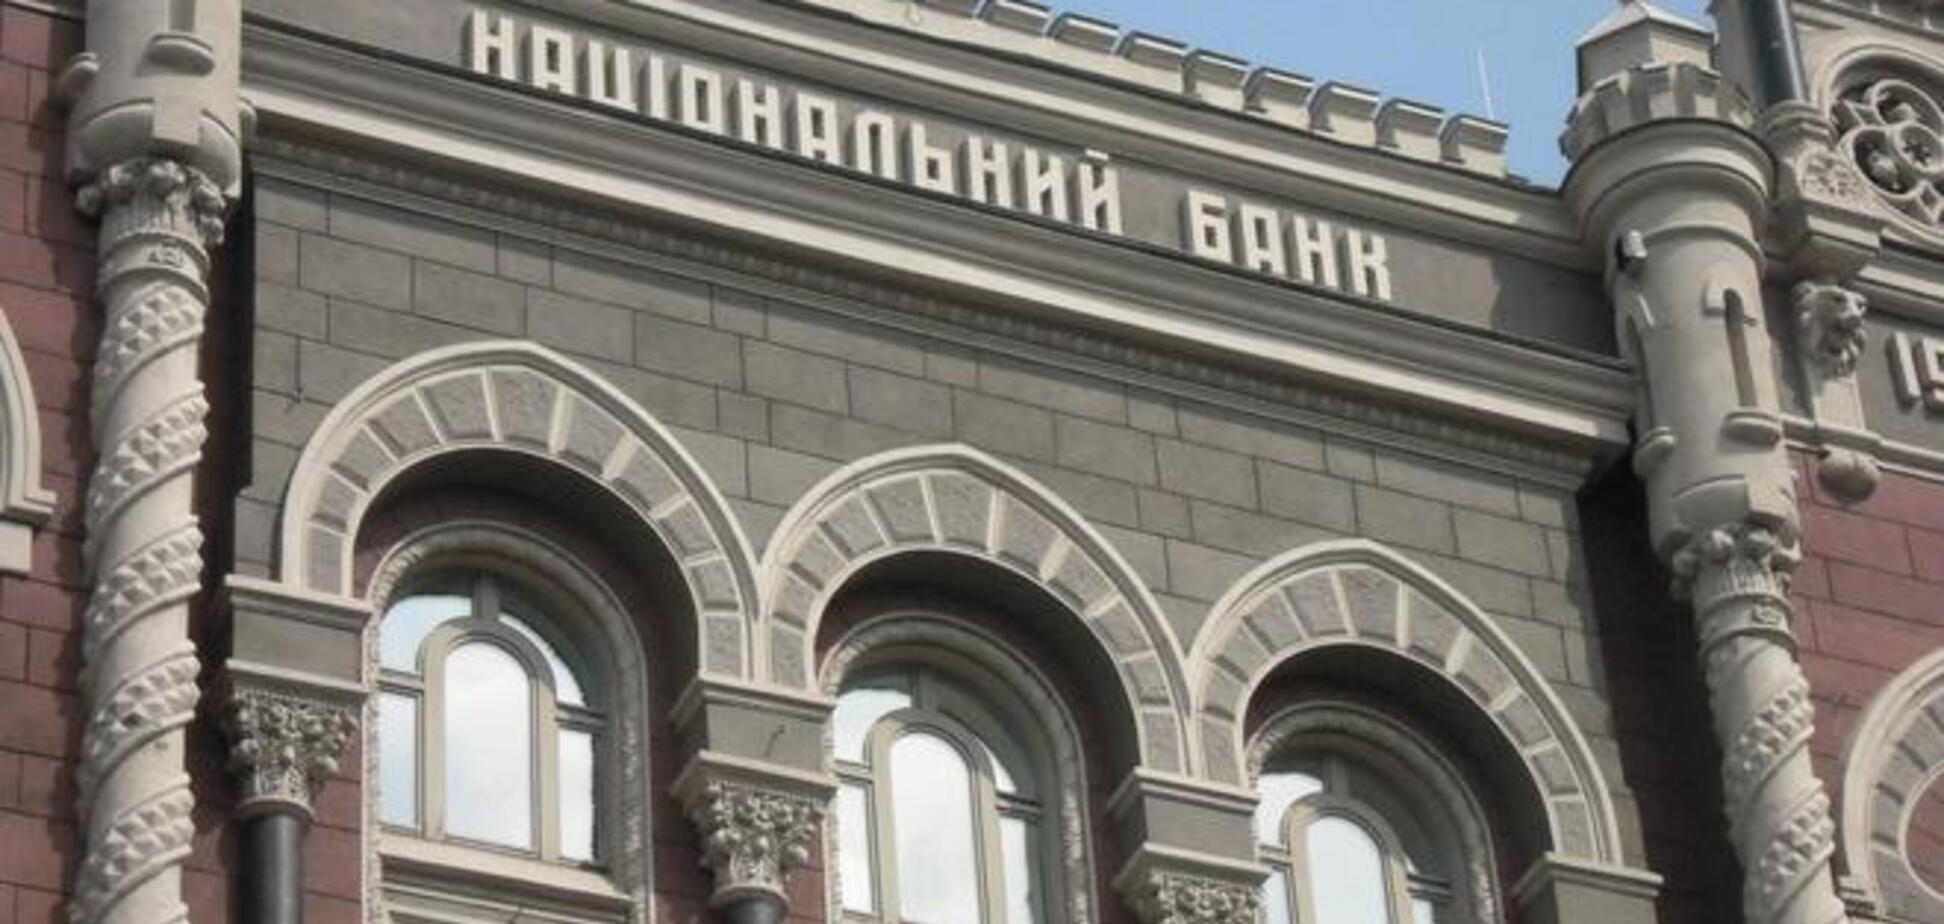 Убыток украинских банков превысил 13 миллиардов гривен